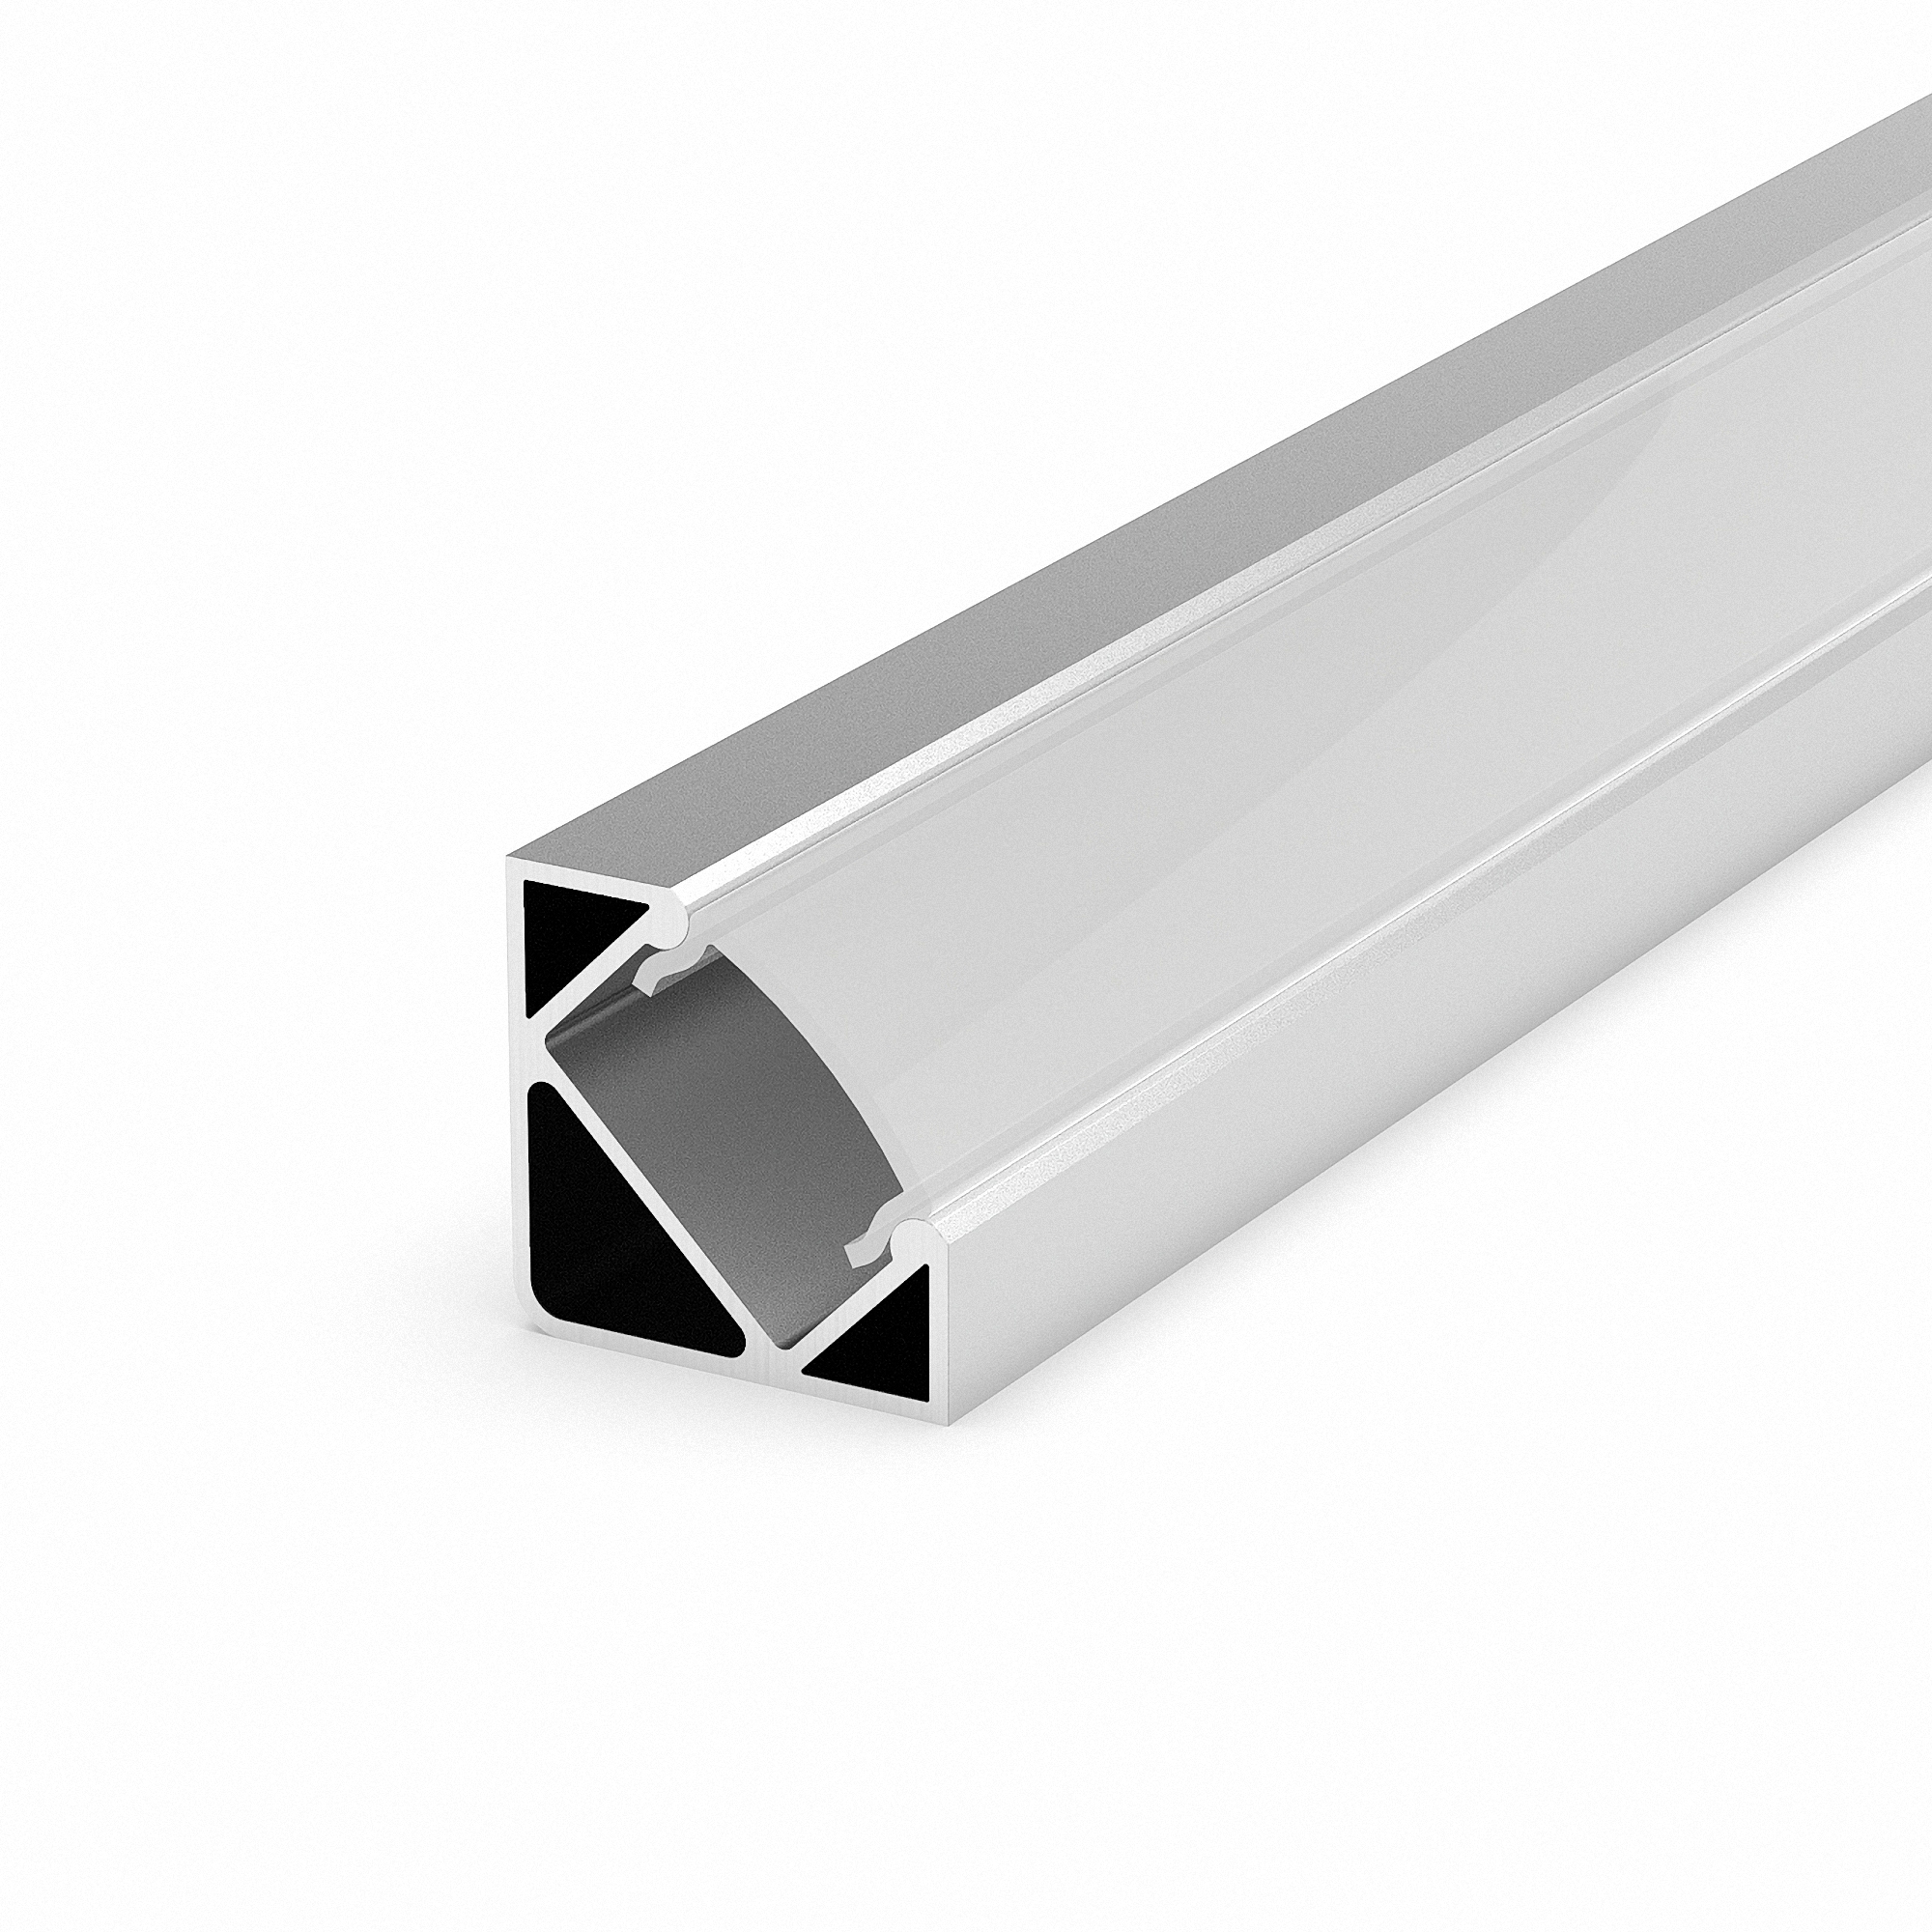 Paket] LED Profile in silber P3-1 100CM opal Abdeckung für LED Streifen bis  13,4mm Breite